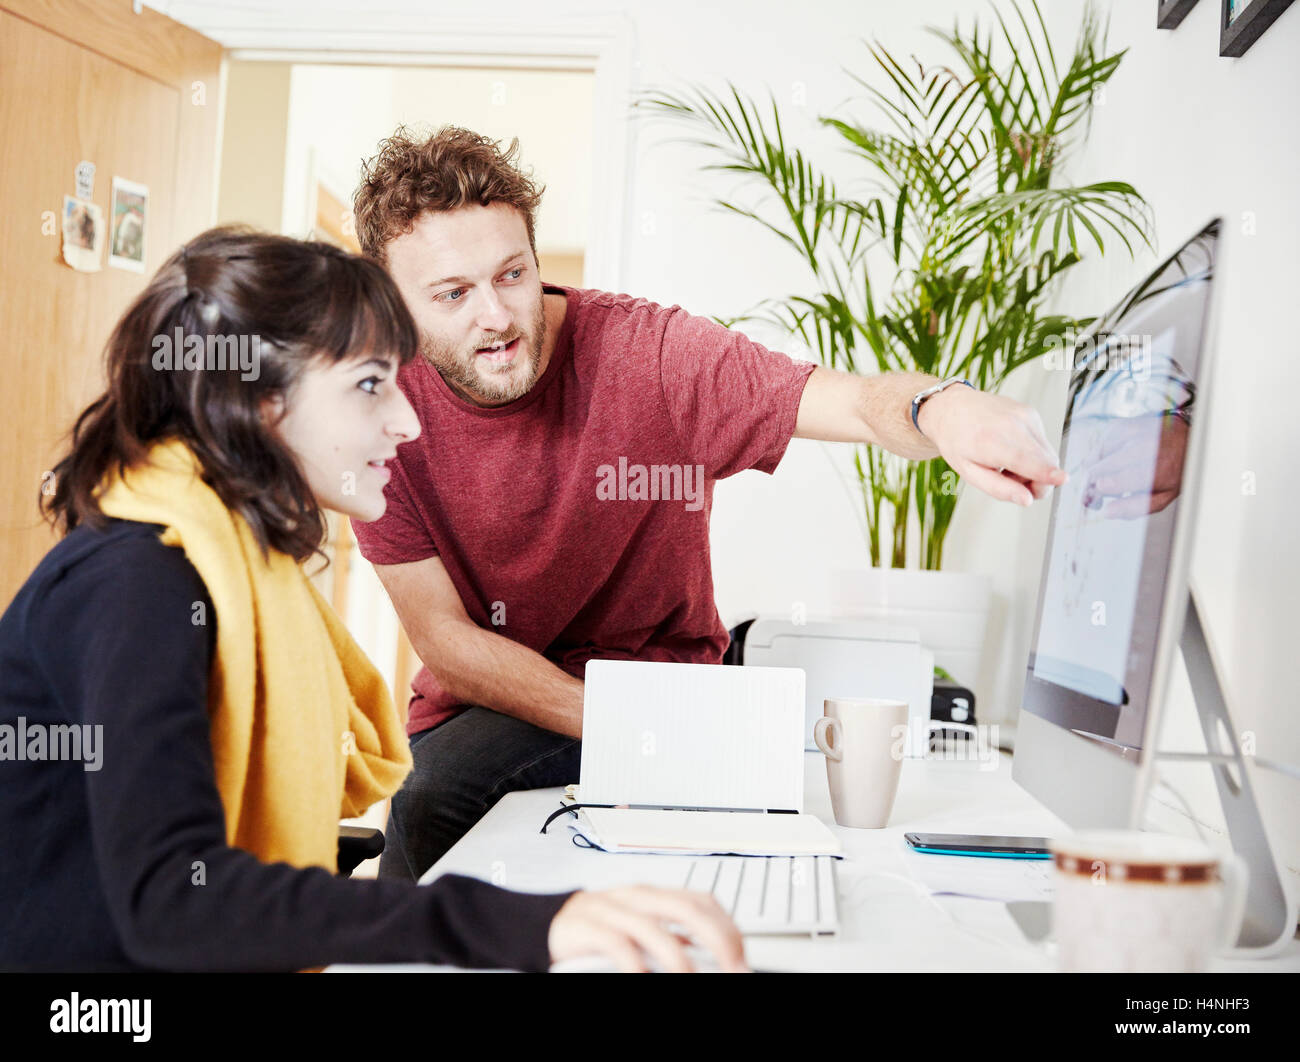 Zwei Personen zusammen arbeiten, im Büro, einem Computer-Bildschirm betrachten. Stockfoto